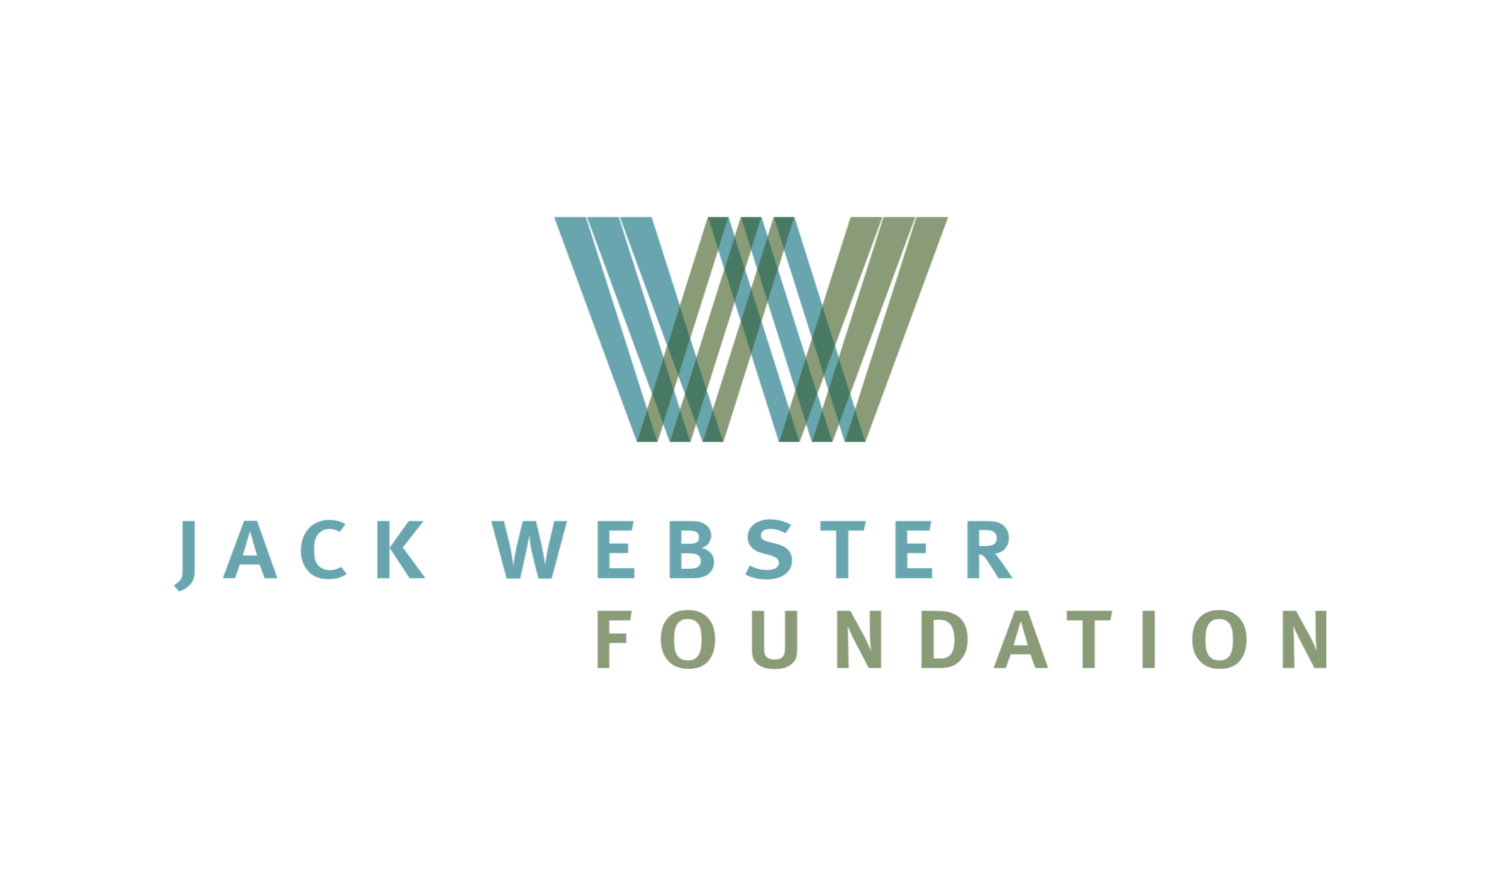 Jack Webster Foundation logo